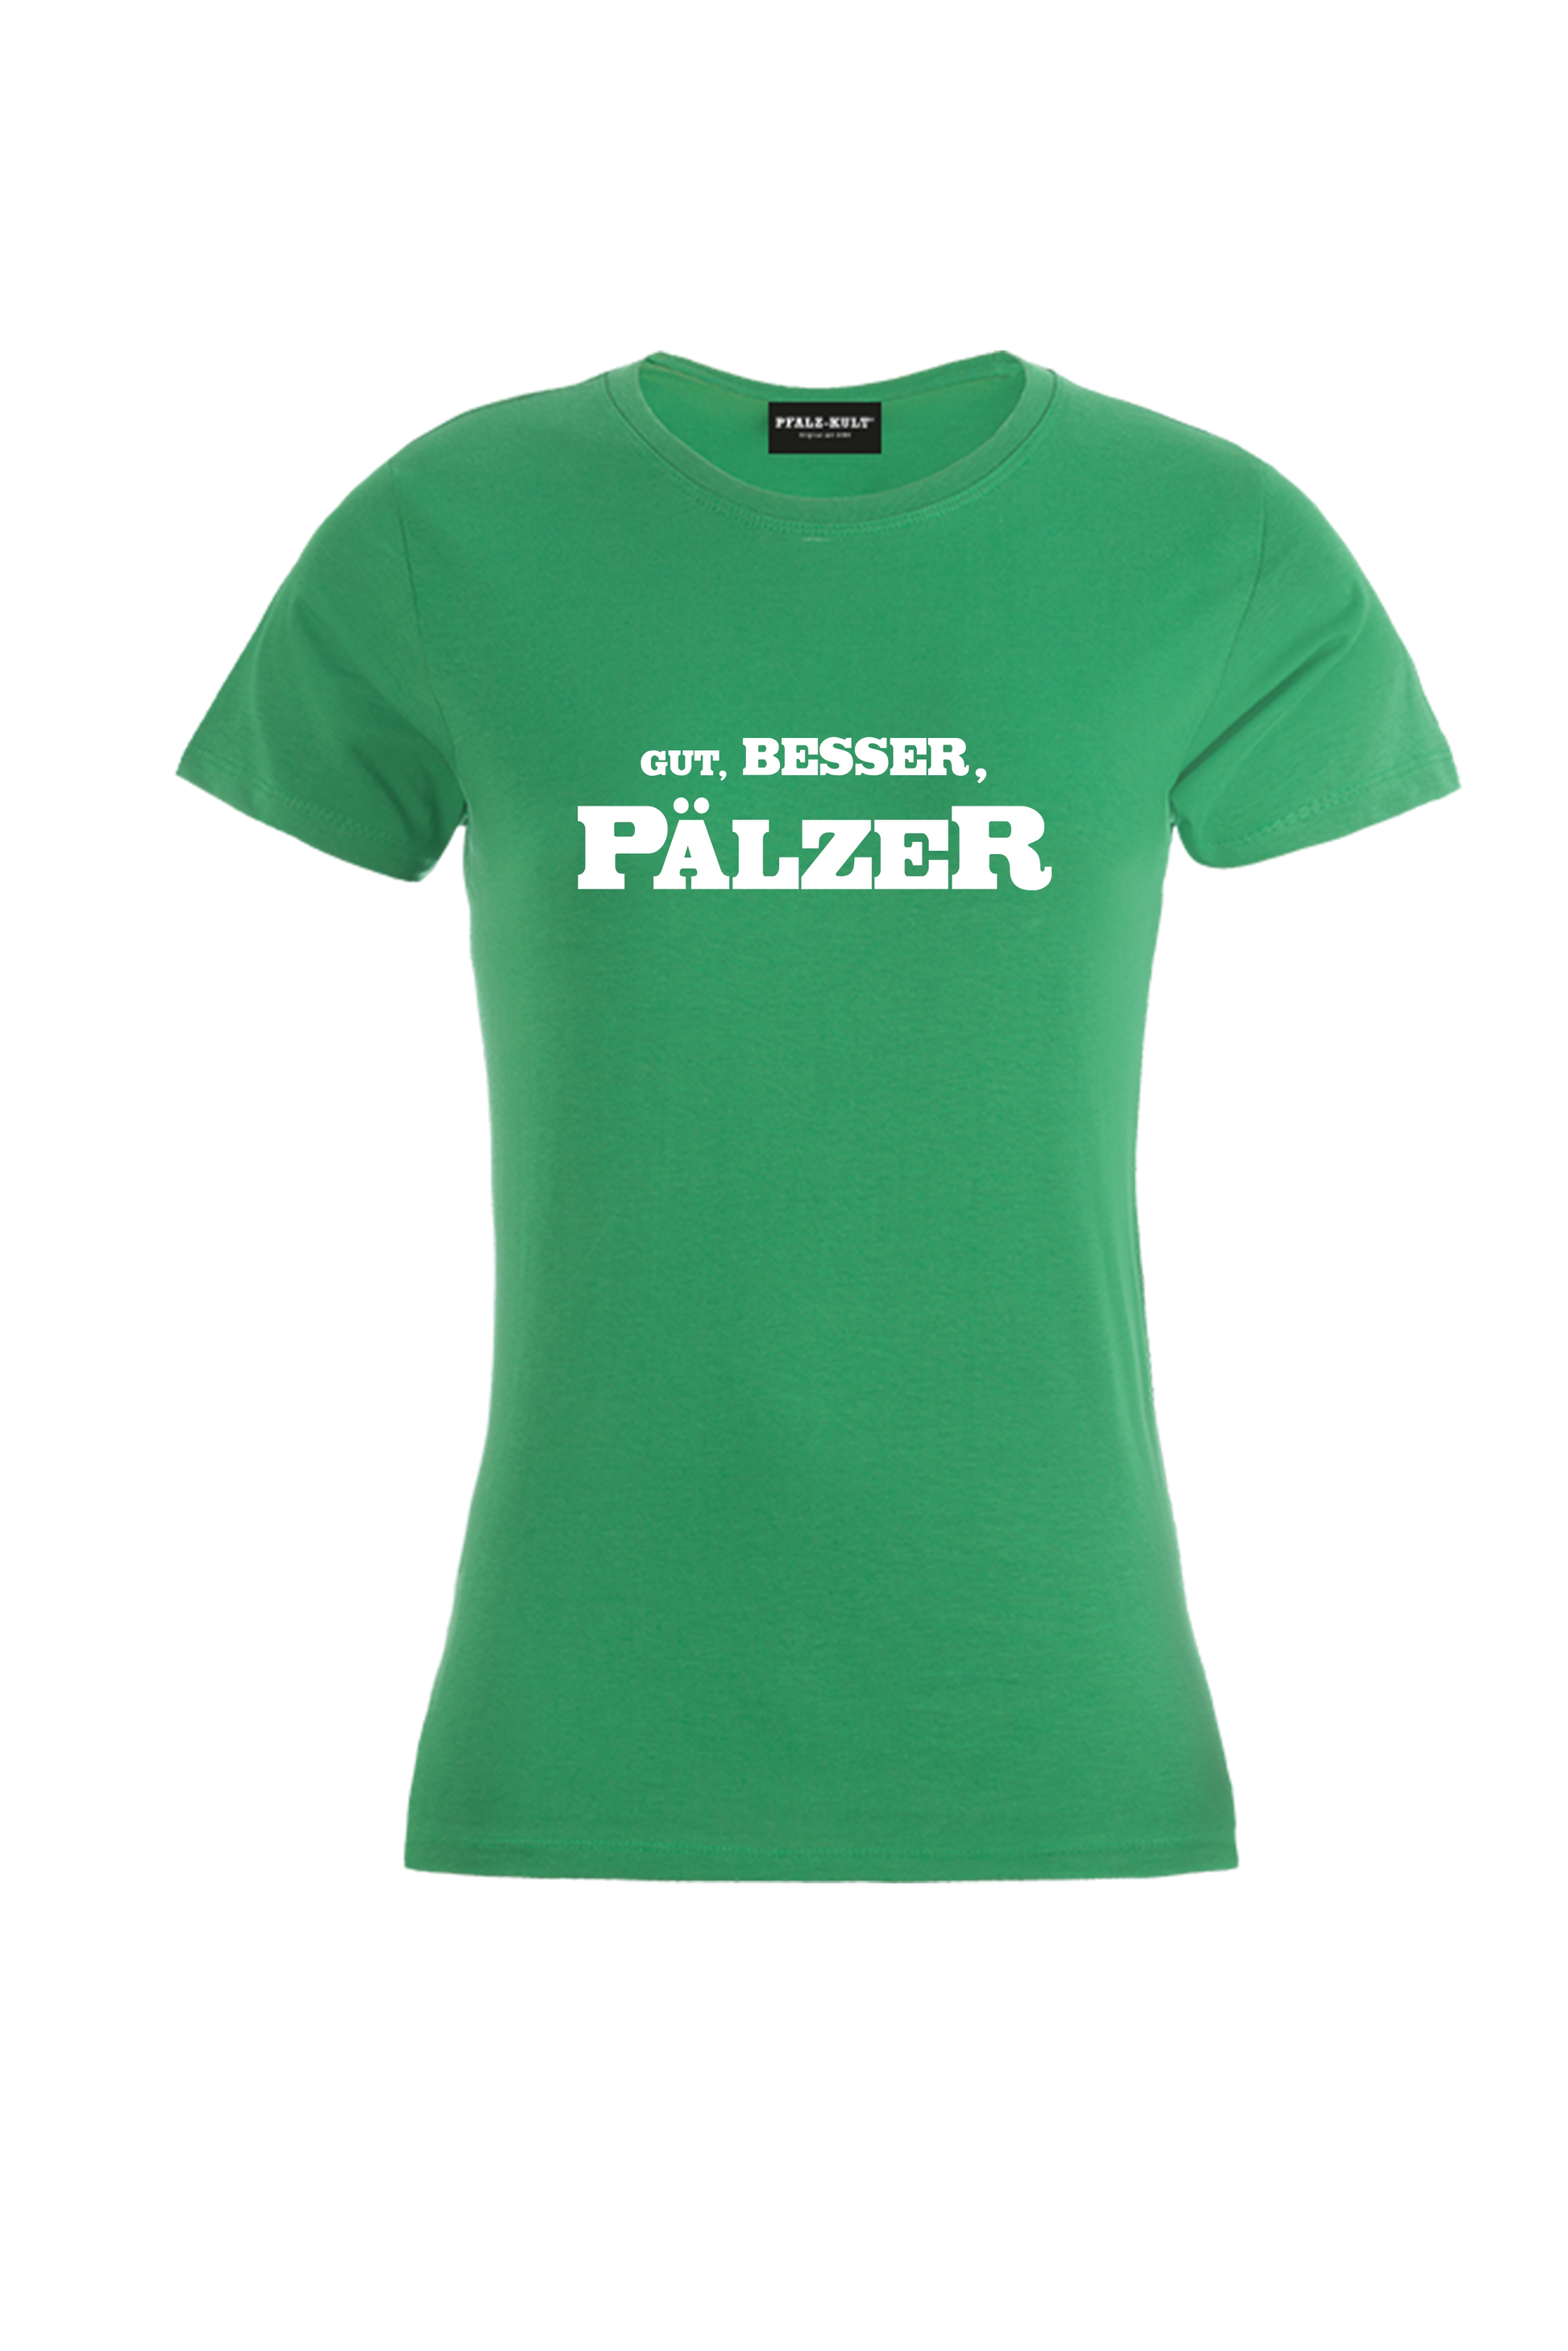 Gut, besser, Pälzer Damen T-Shirt in grün. Geschenkidee auf pfälzisch von Pfalz-Kult aus DÜW